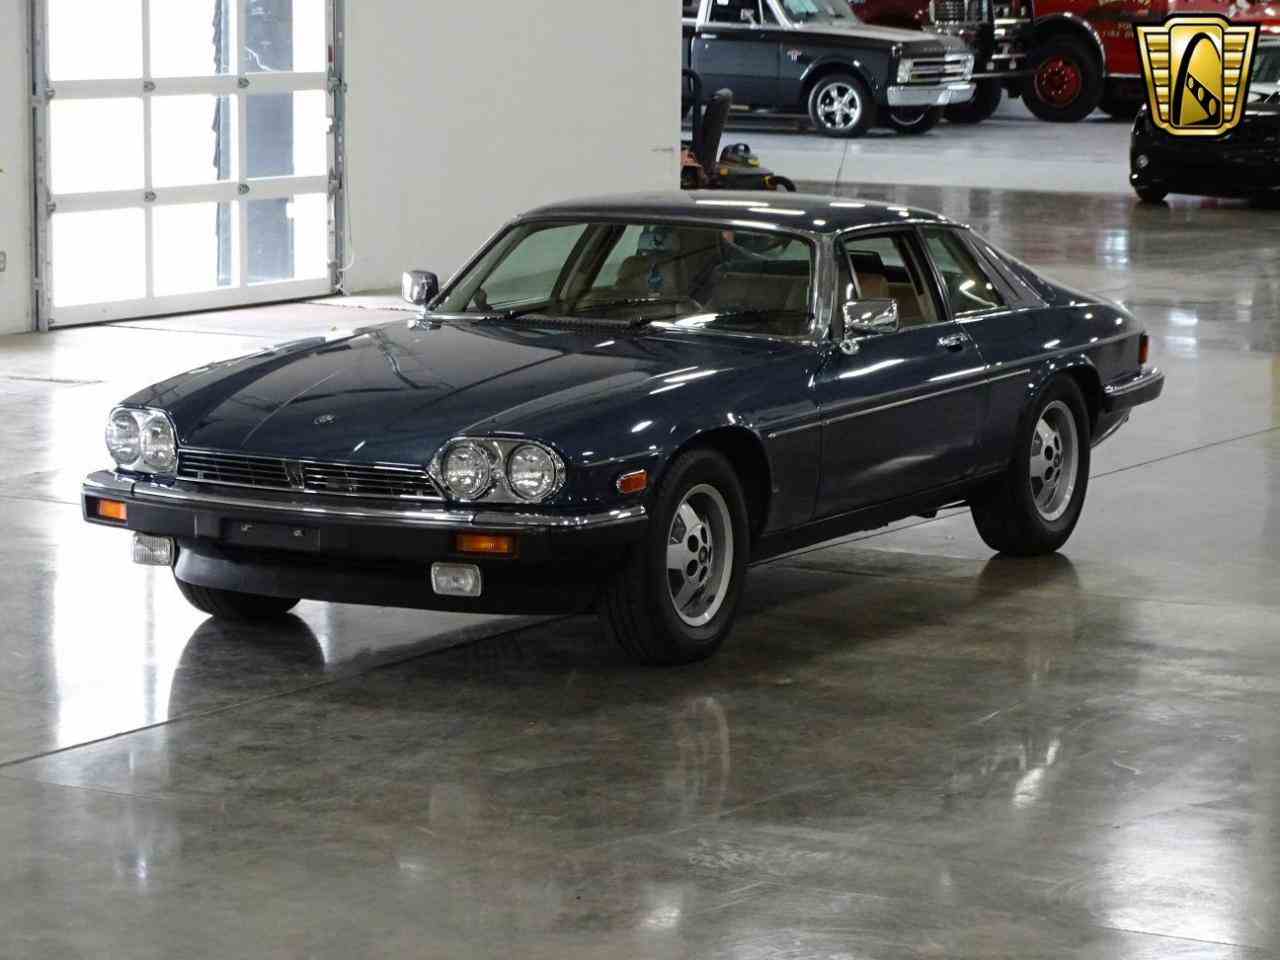 1988 Jaguar XJS for Sale | ClassicCars.com | CC-1047779